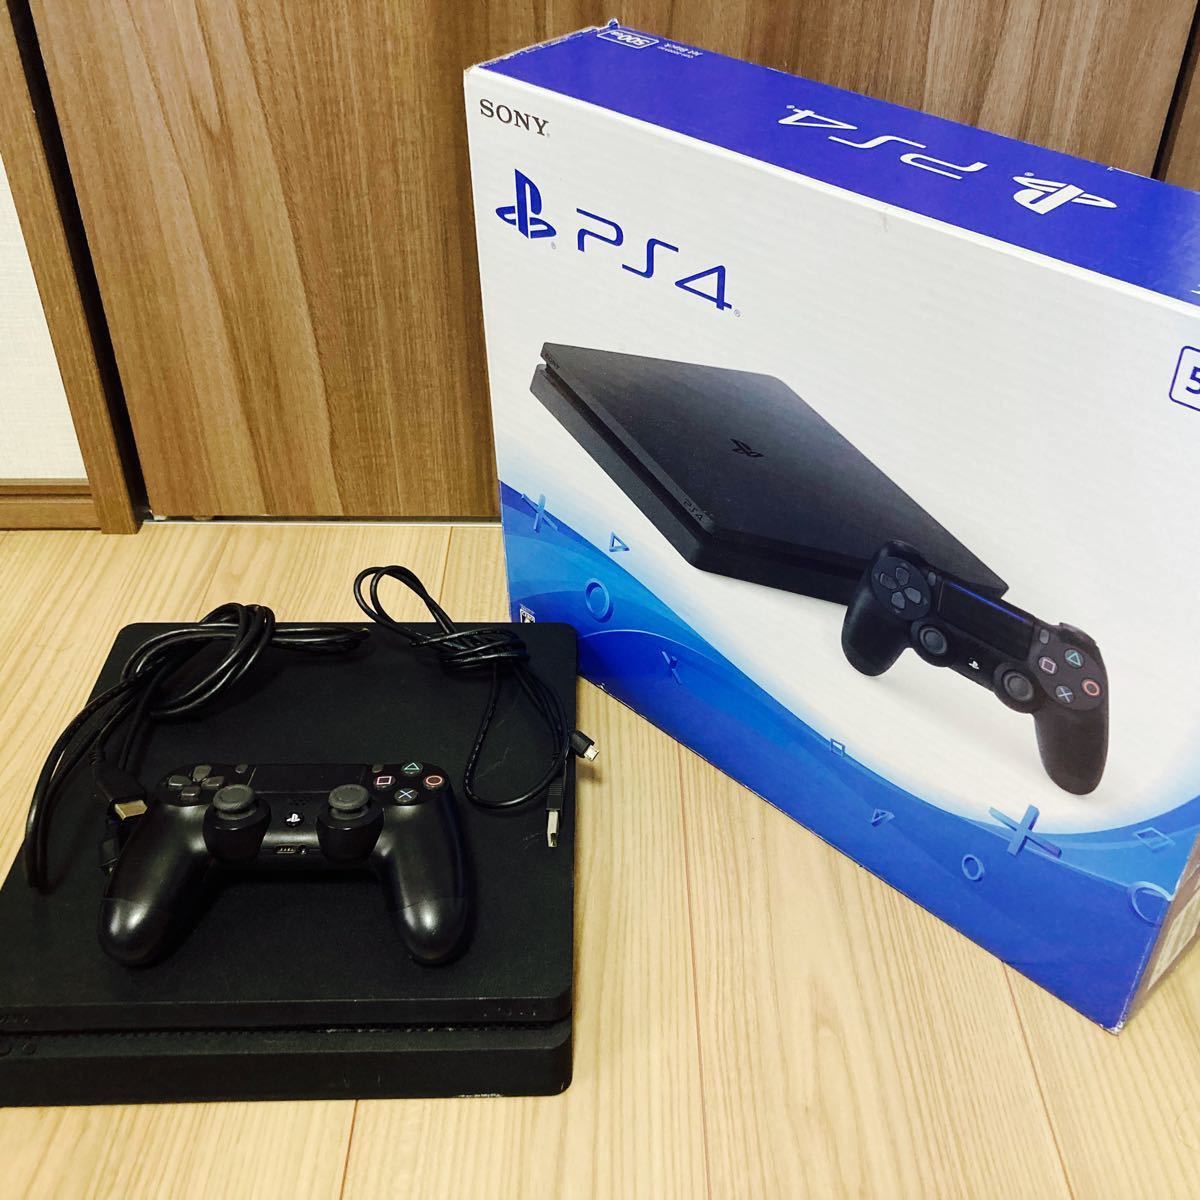 クーポン廉価 CUH-2100A PlayStation4 ソフト付 本体 PS4 家庭用ゲーム本体